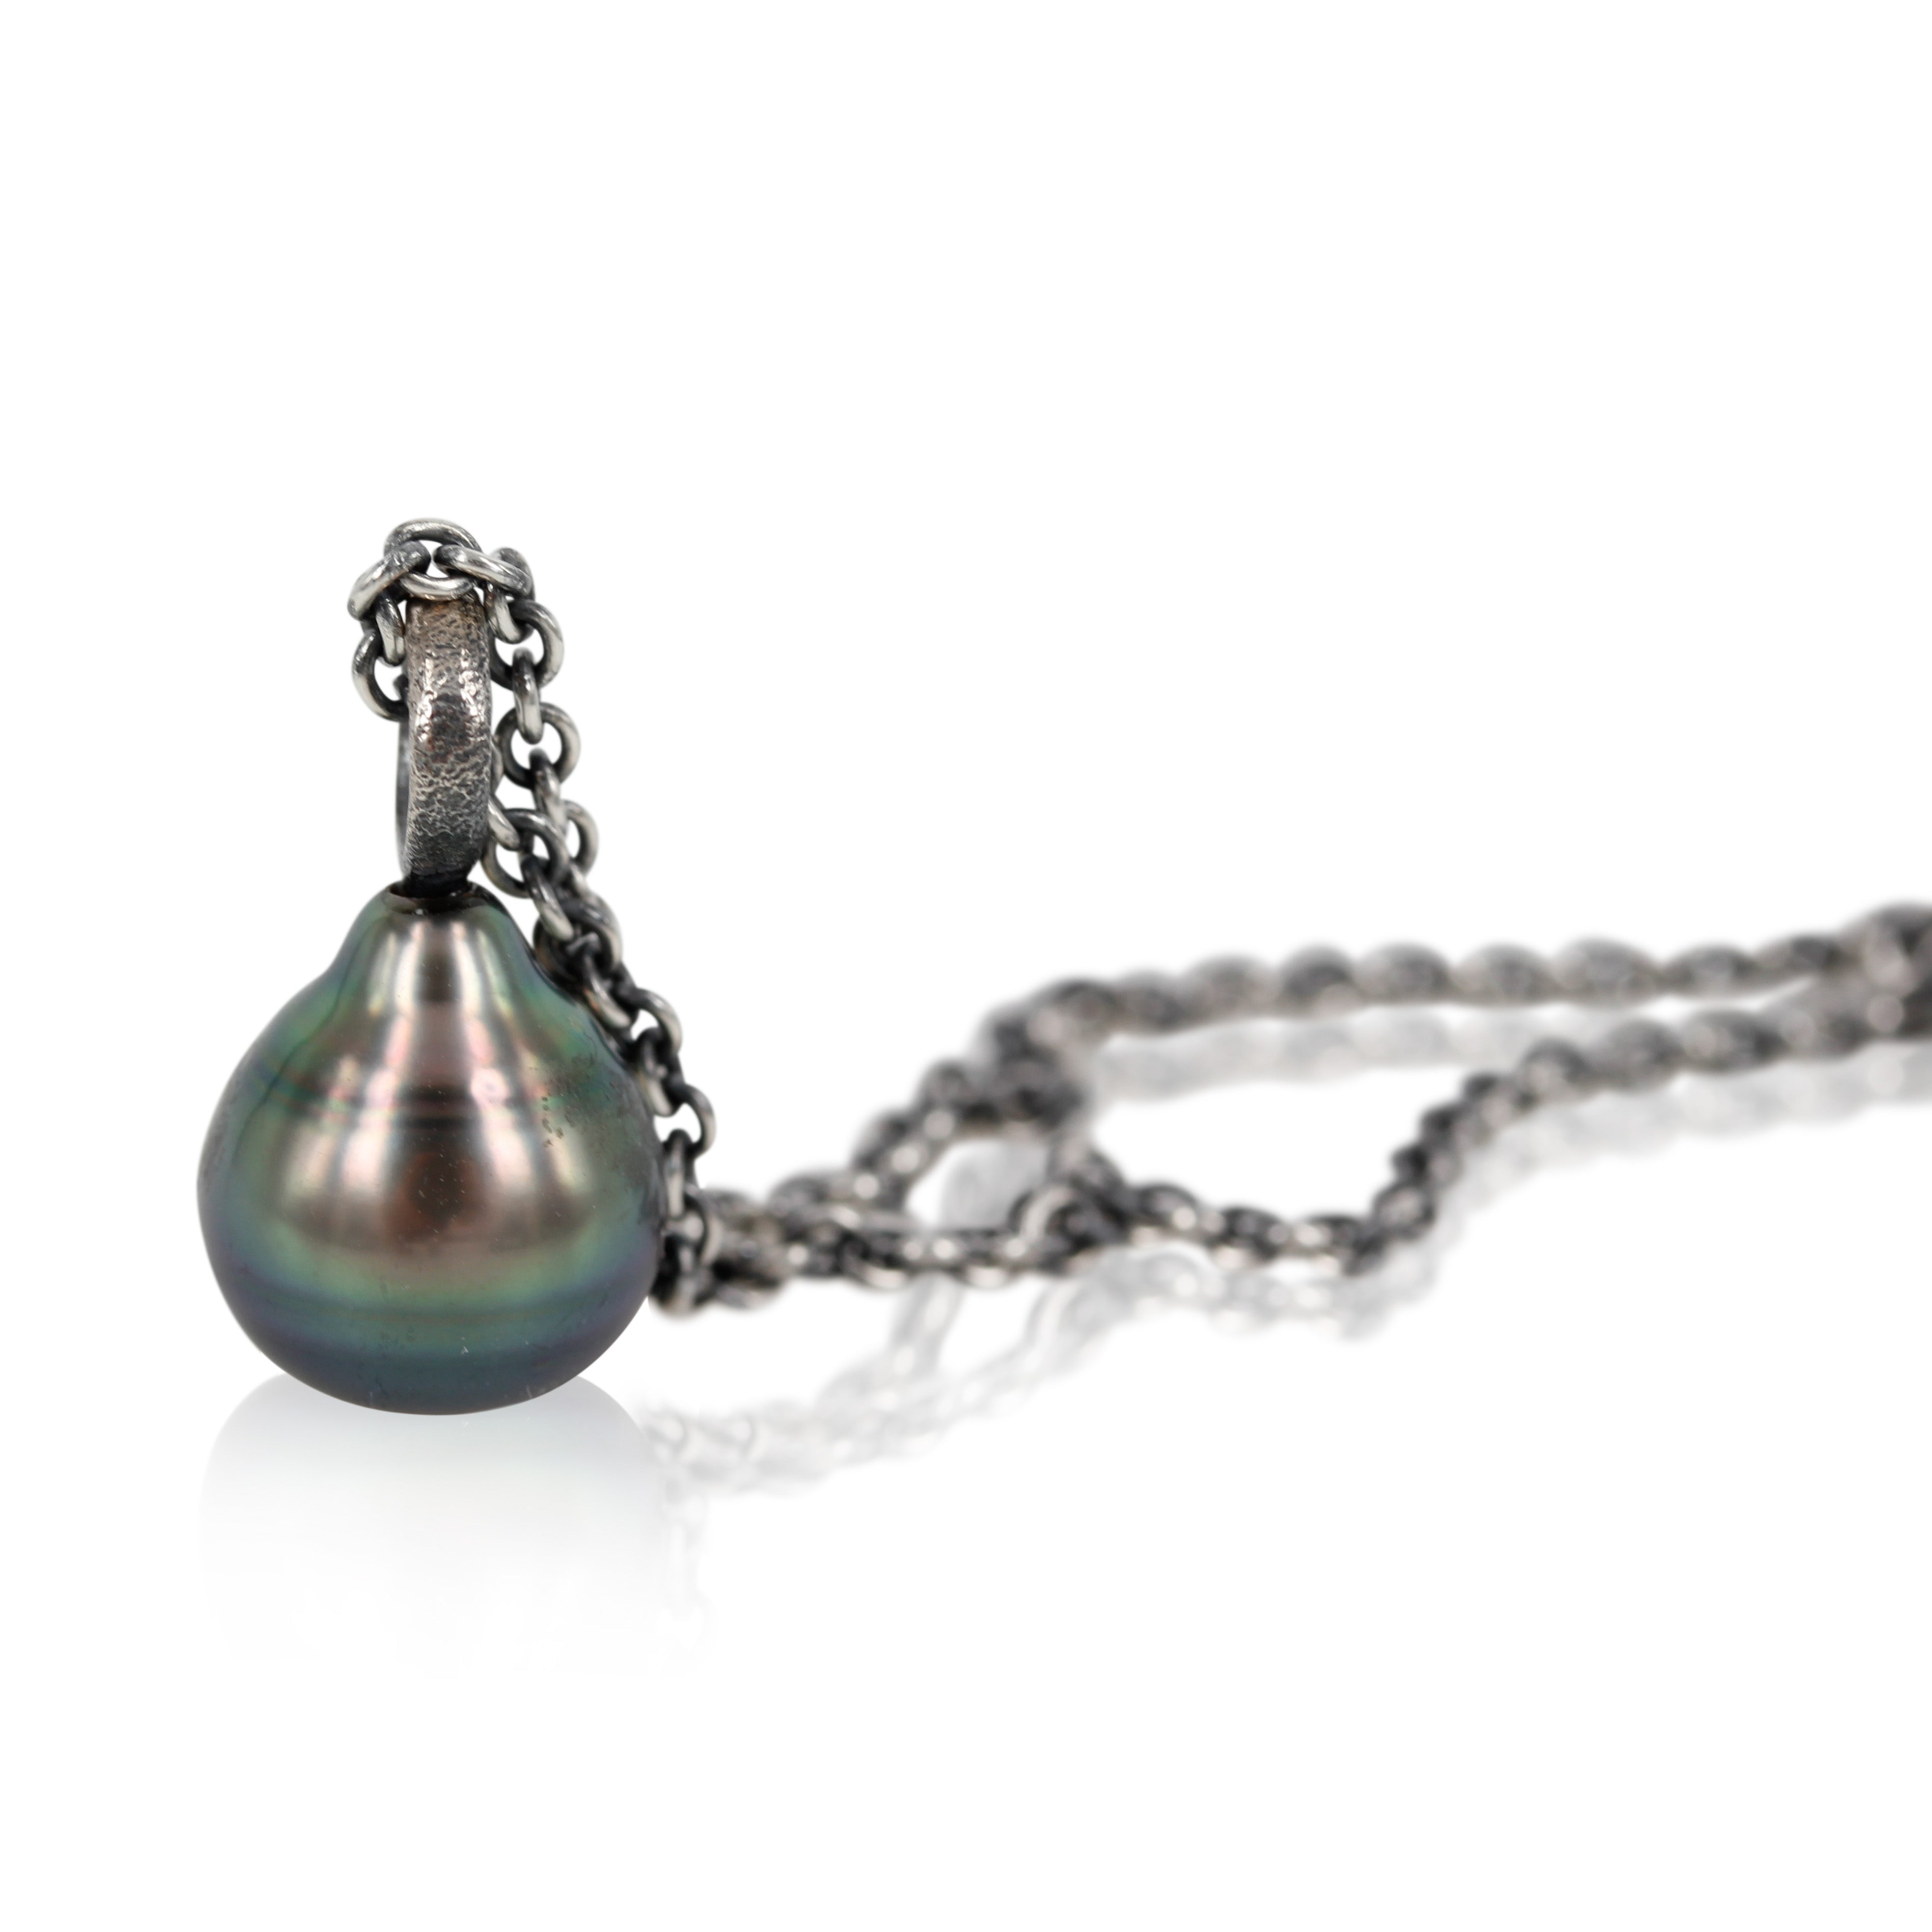 Smuk Tahiti perle med sølv top, perlen ca. 10 x 12 mm. - Se den her